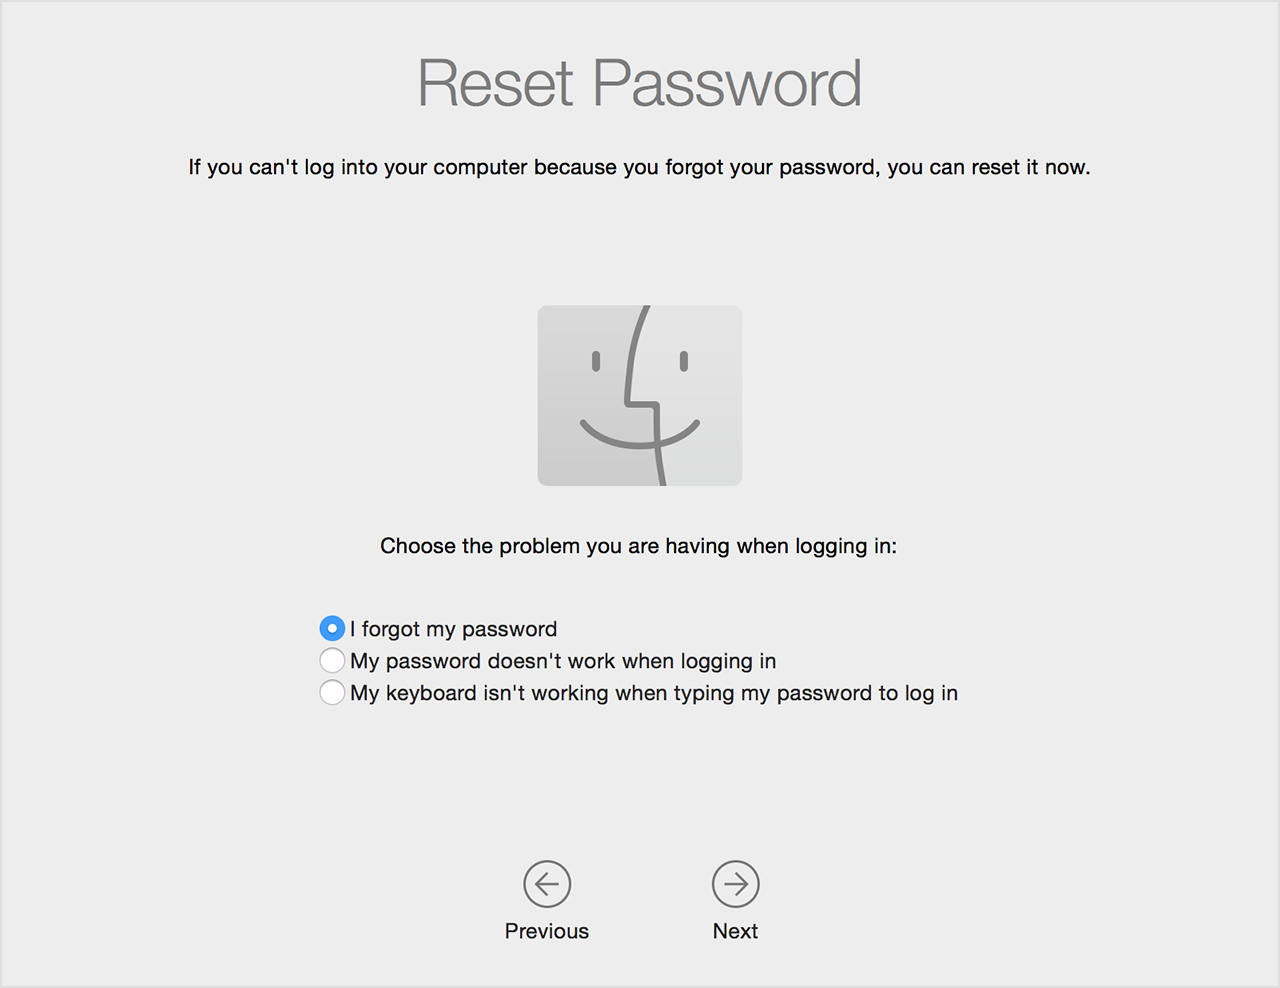 Екран скидання пароля з можливістю вибрати проблему, через яку вам потрібно скинути пароль